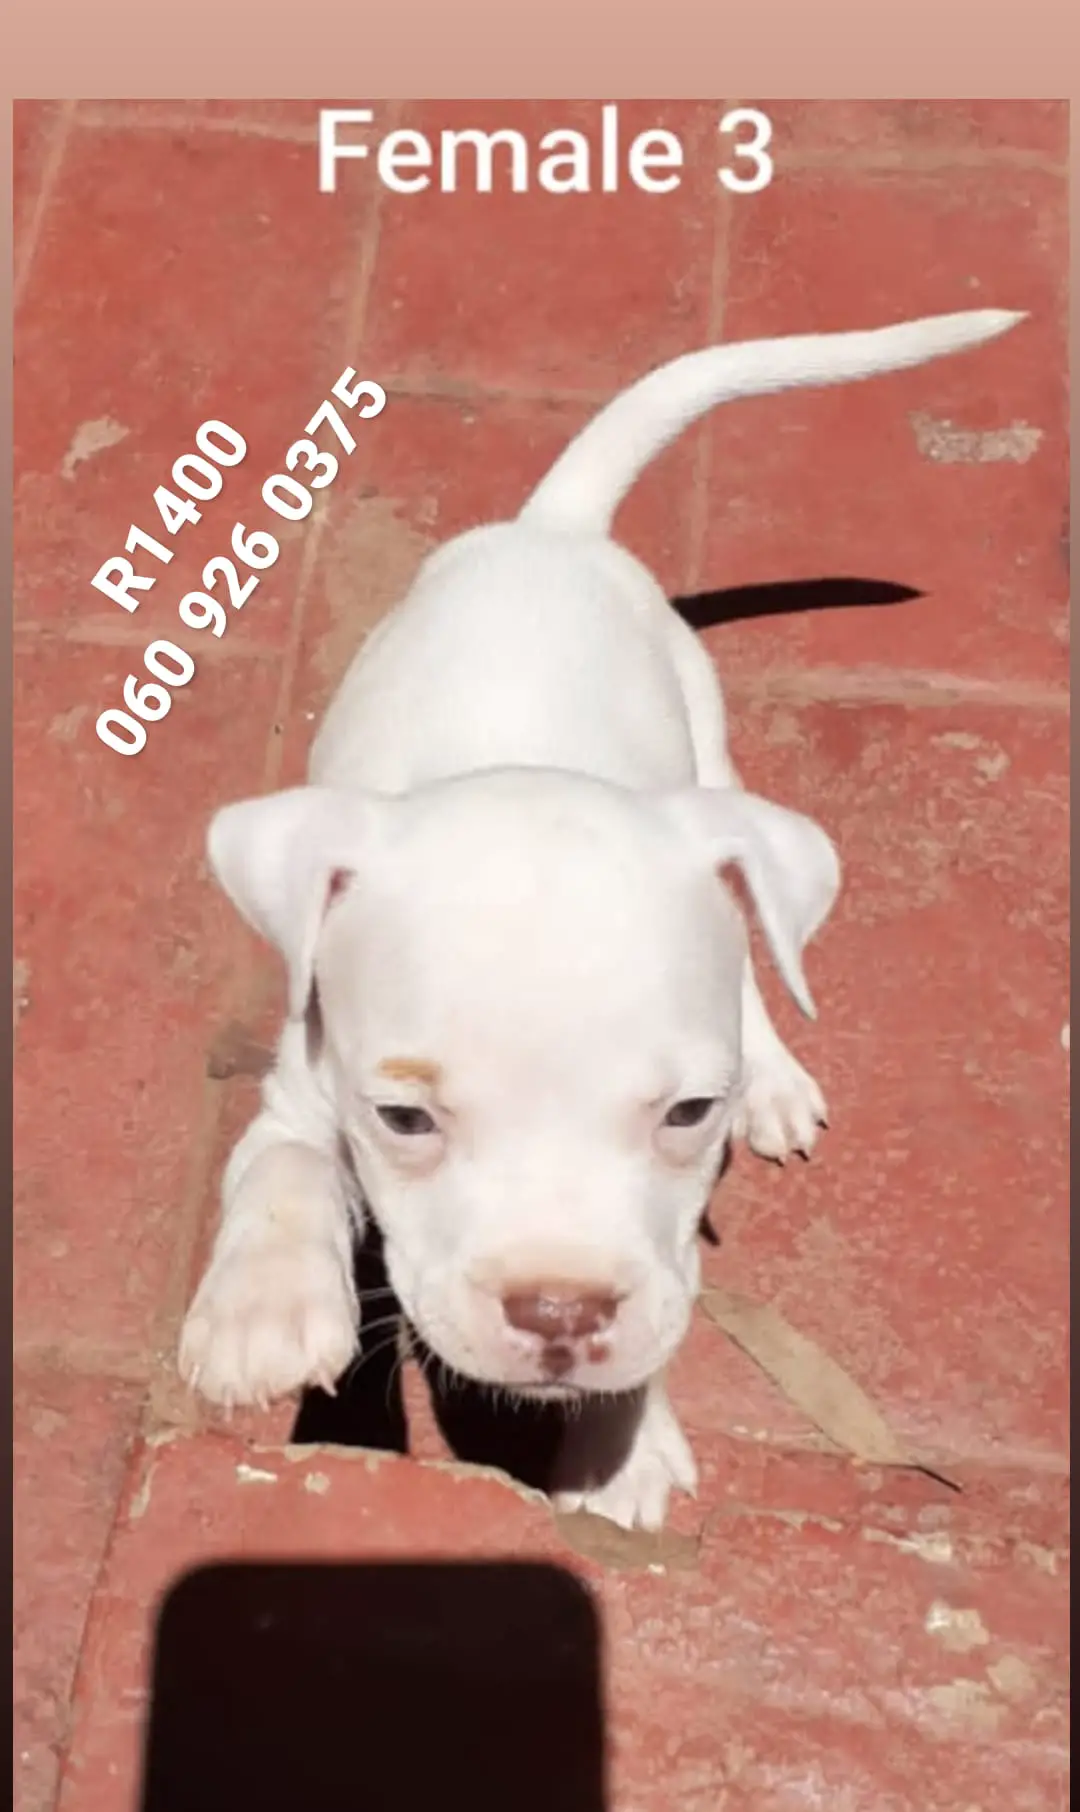 Pitbull Puppies in Pretoria (21/01/2021)